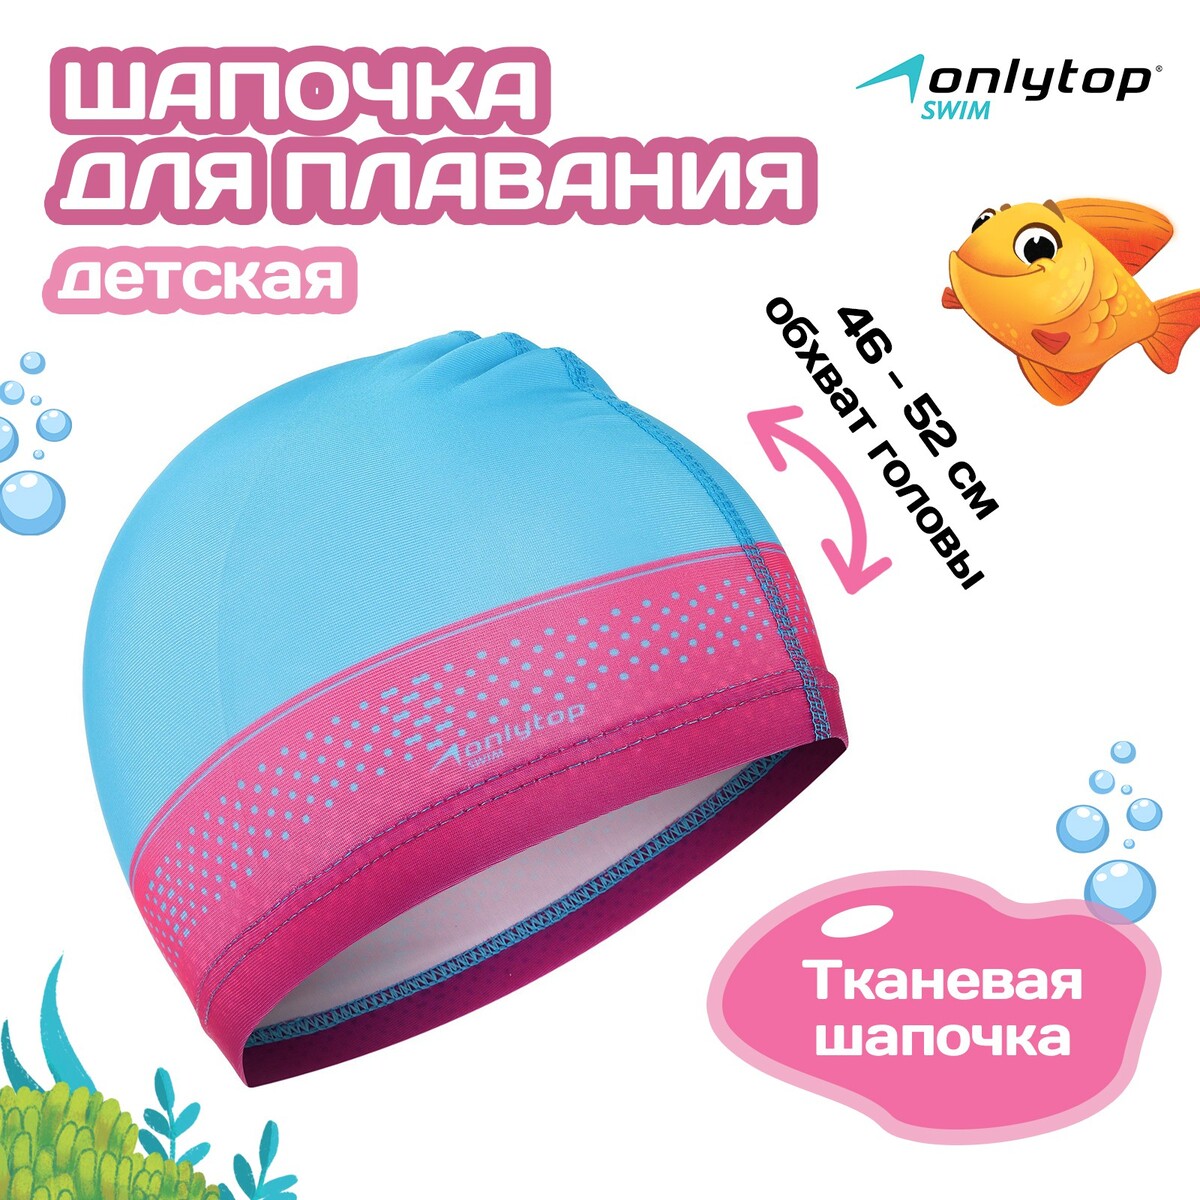 Шапочка для плавания детская onlytop swim, тканевая, обхват 46-52 см шапочка для плавания atemi сс101 тканевая с силиконовым покрытием чёрная